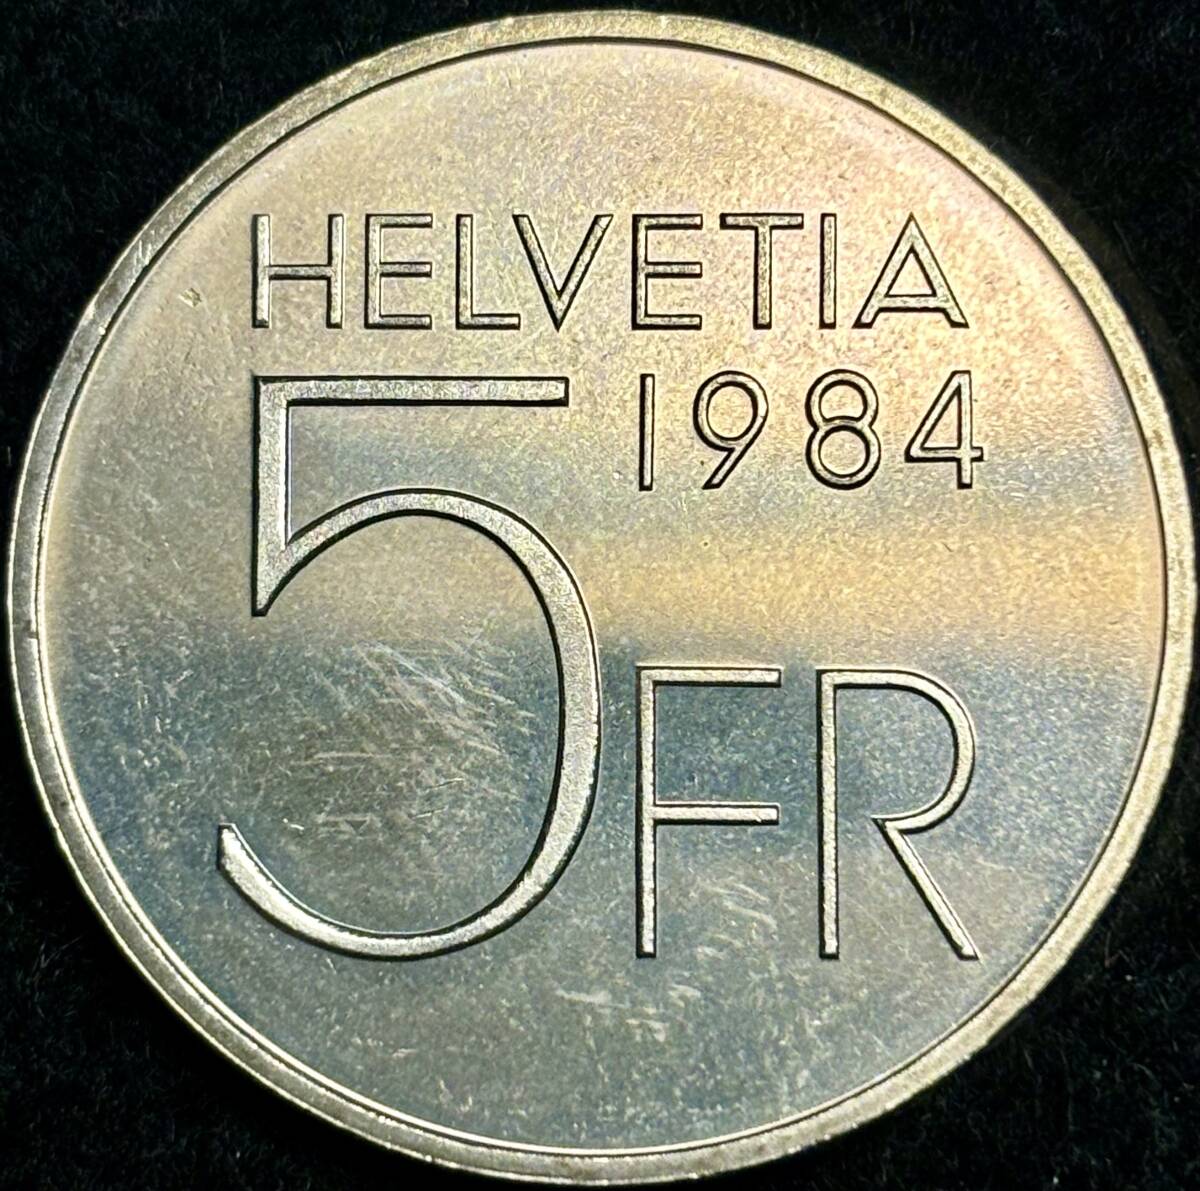 【スイス・ニッケル銅貨】(1984年銘 13.3g 直径31mm)の画像2